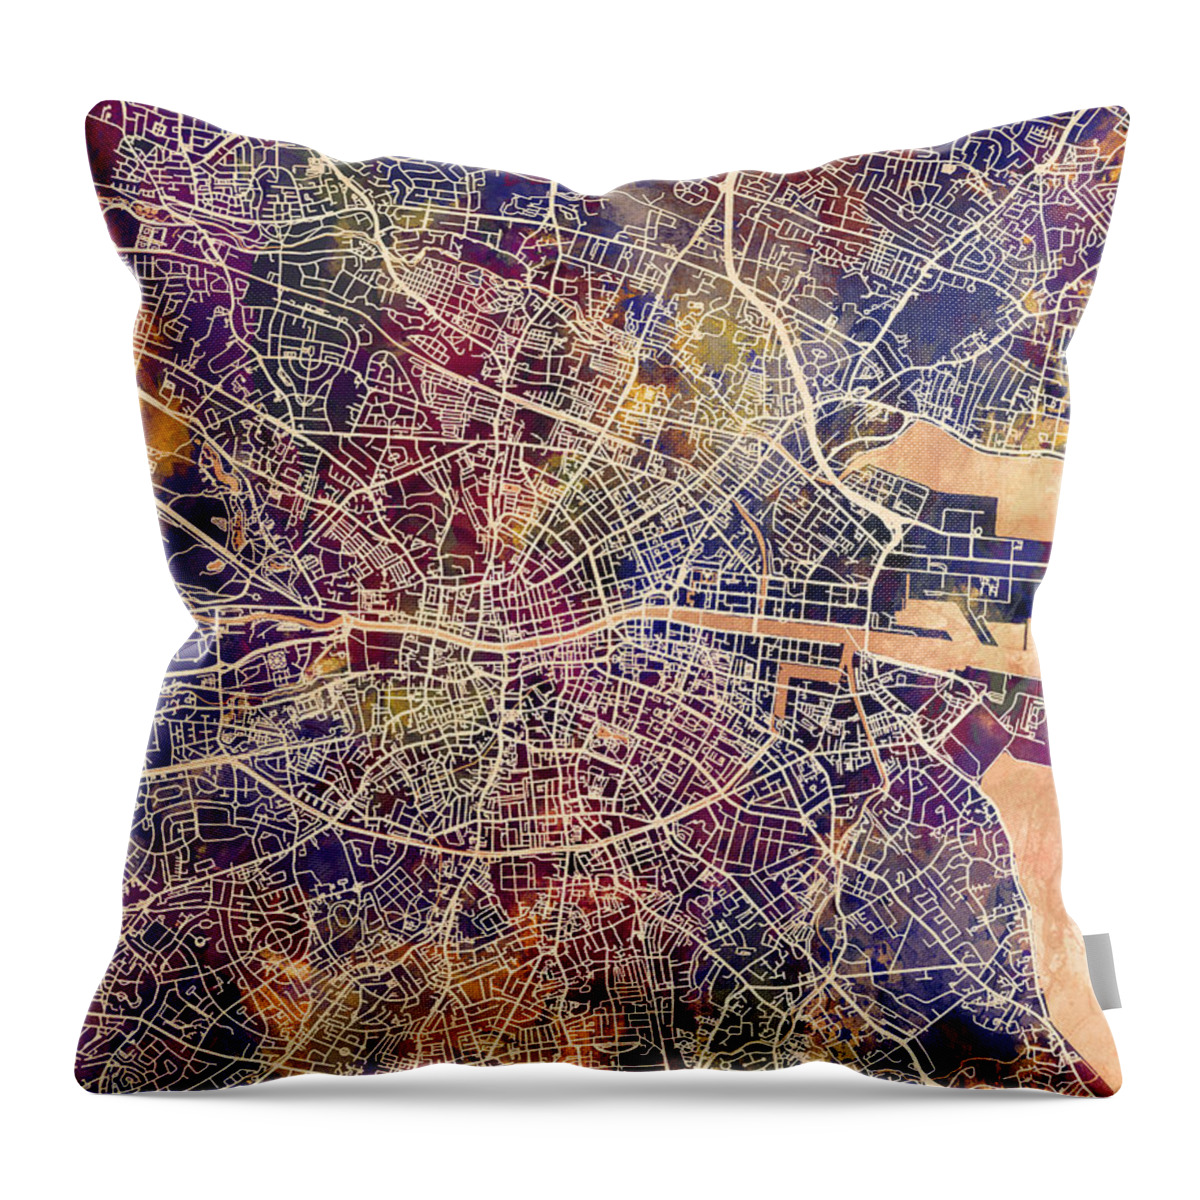 Dublin Throw Pillow featuring the digital art Dublin Ireland City Map #1 by Michael Tompsett